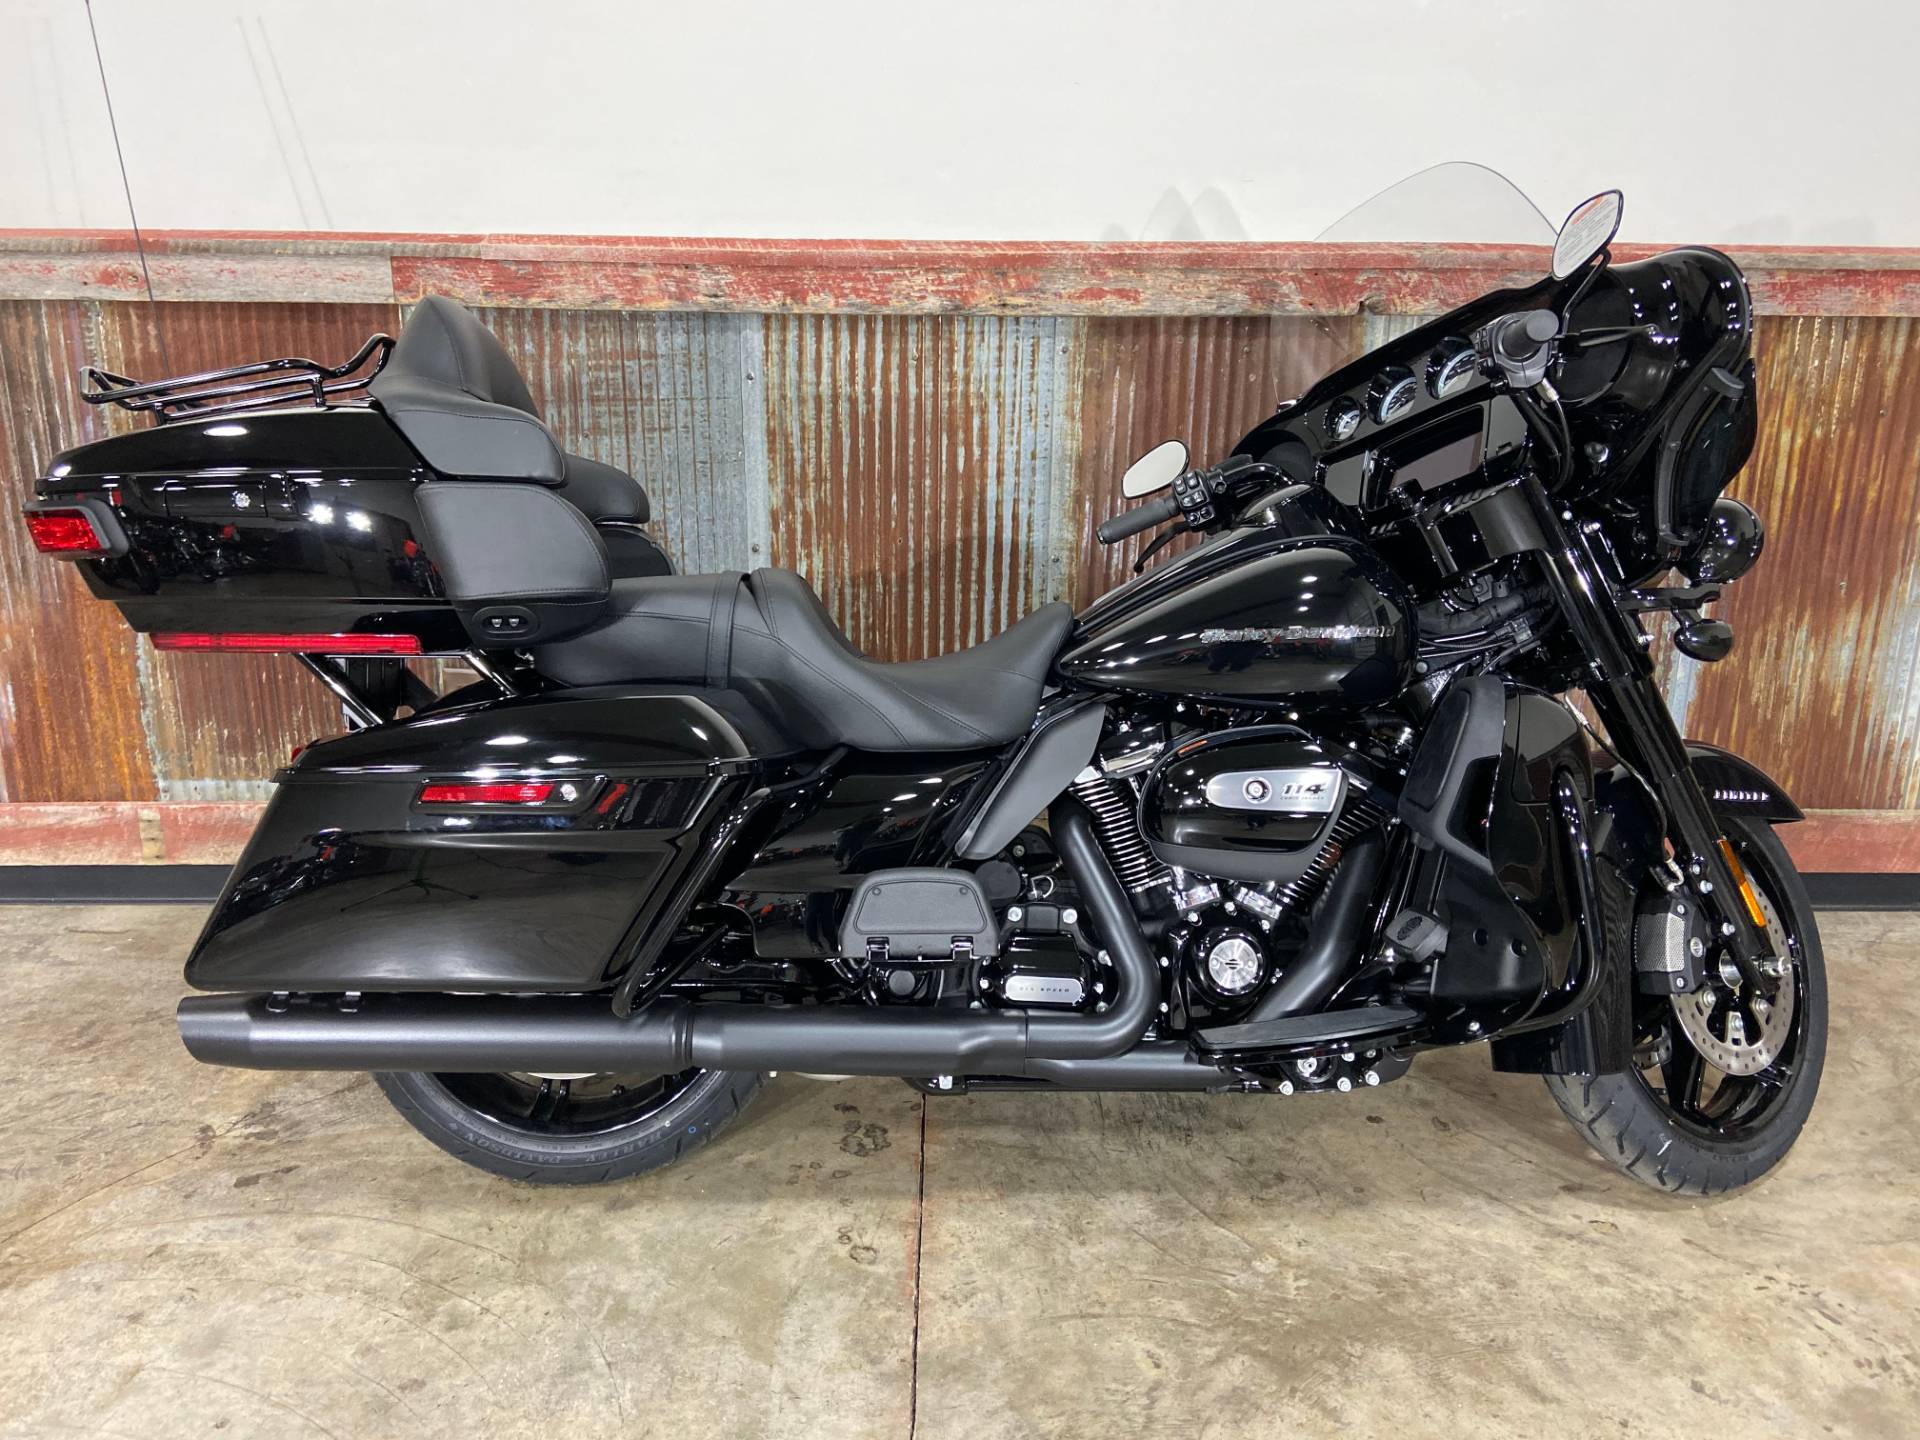 Blacked Out Harley Davidson For Sale Off 67 Medpharmres Com